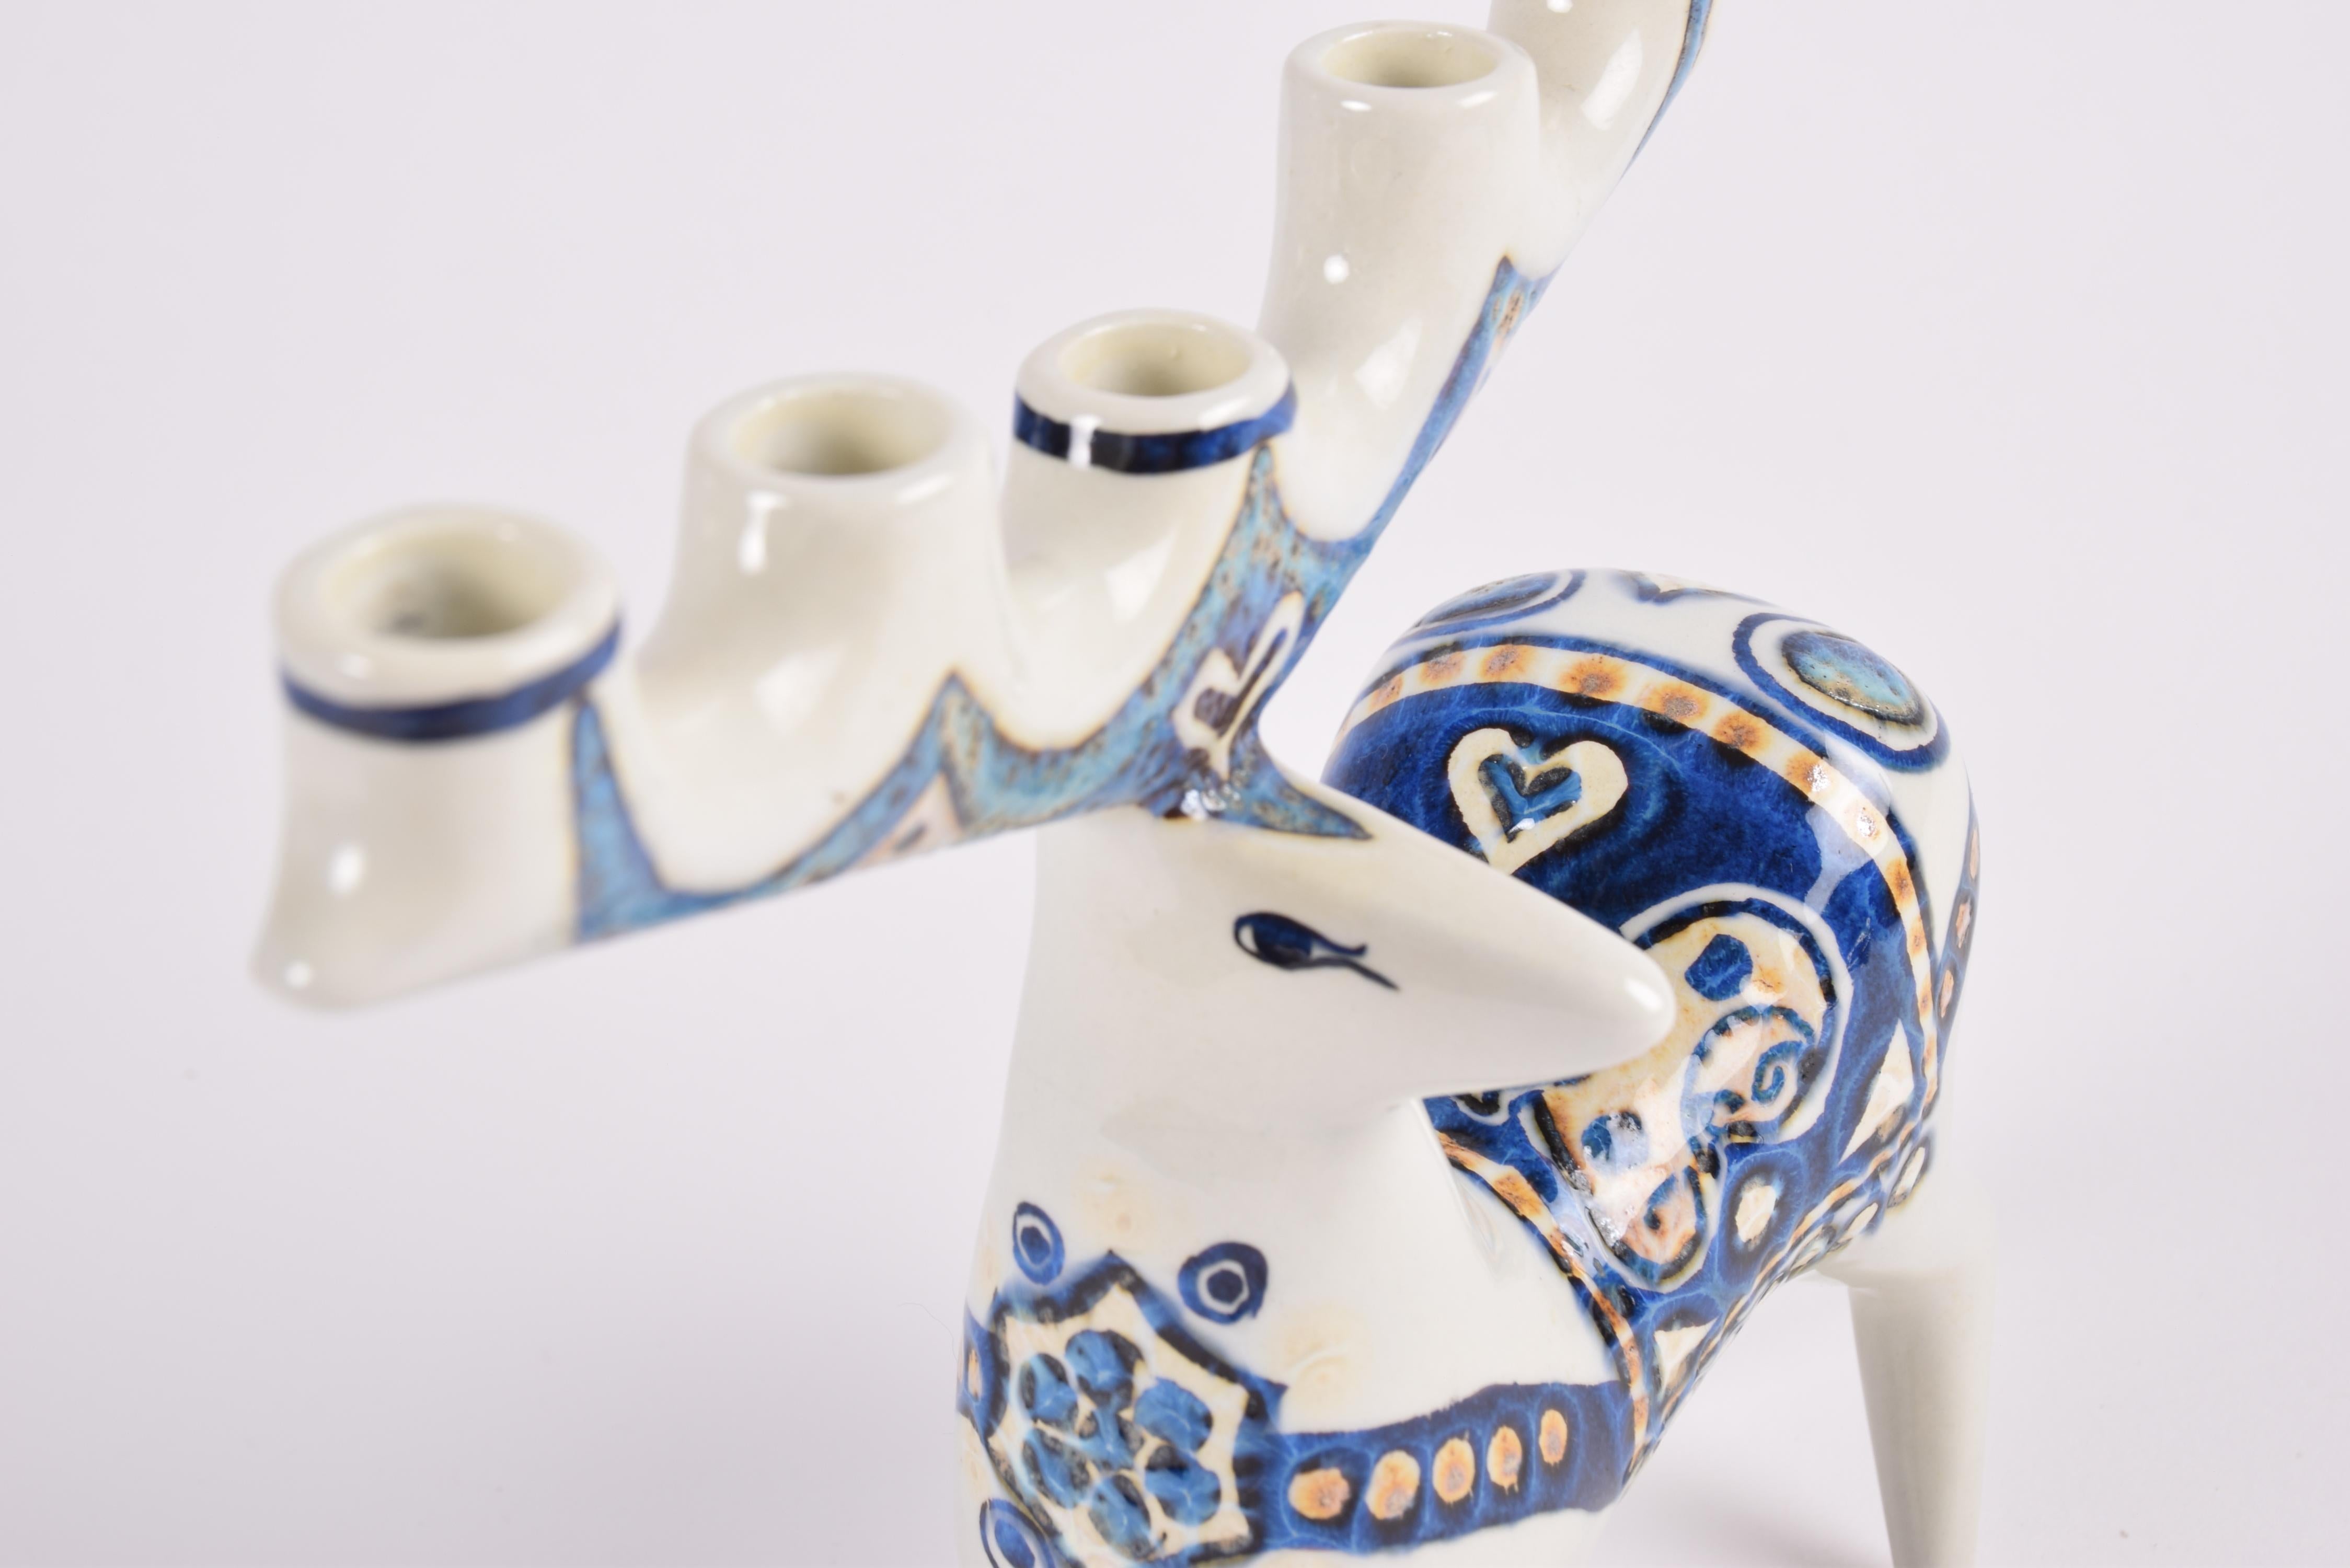 Mid-20th Century Jeanne Grut for Royal Copenhagen Deer Figurine Candelabra, Danish Ceramic, 1970s For Sale